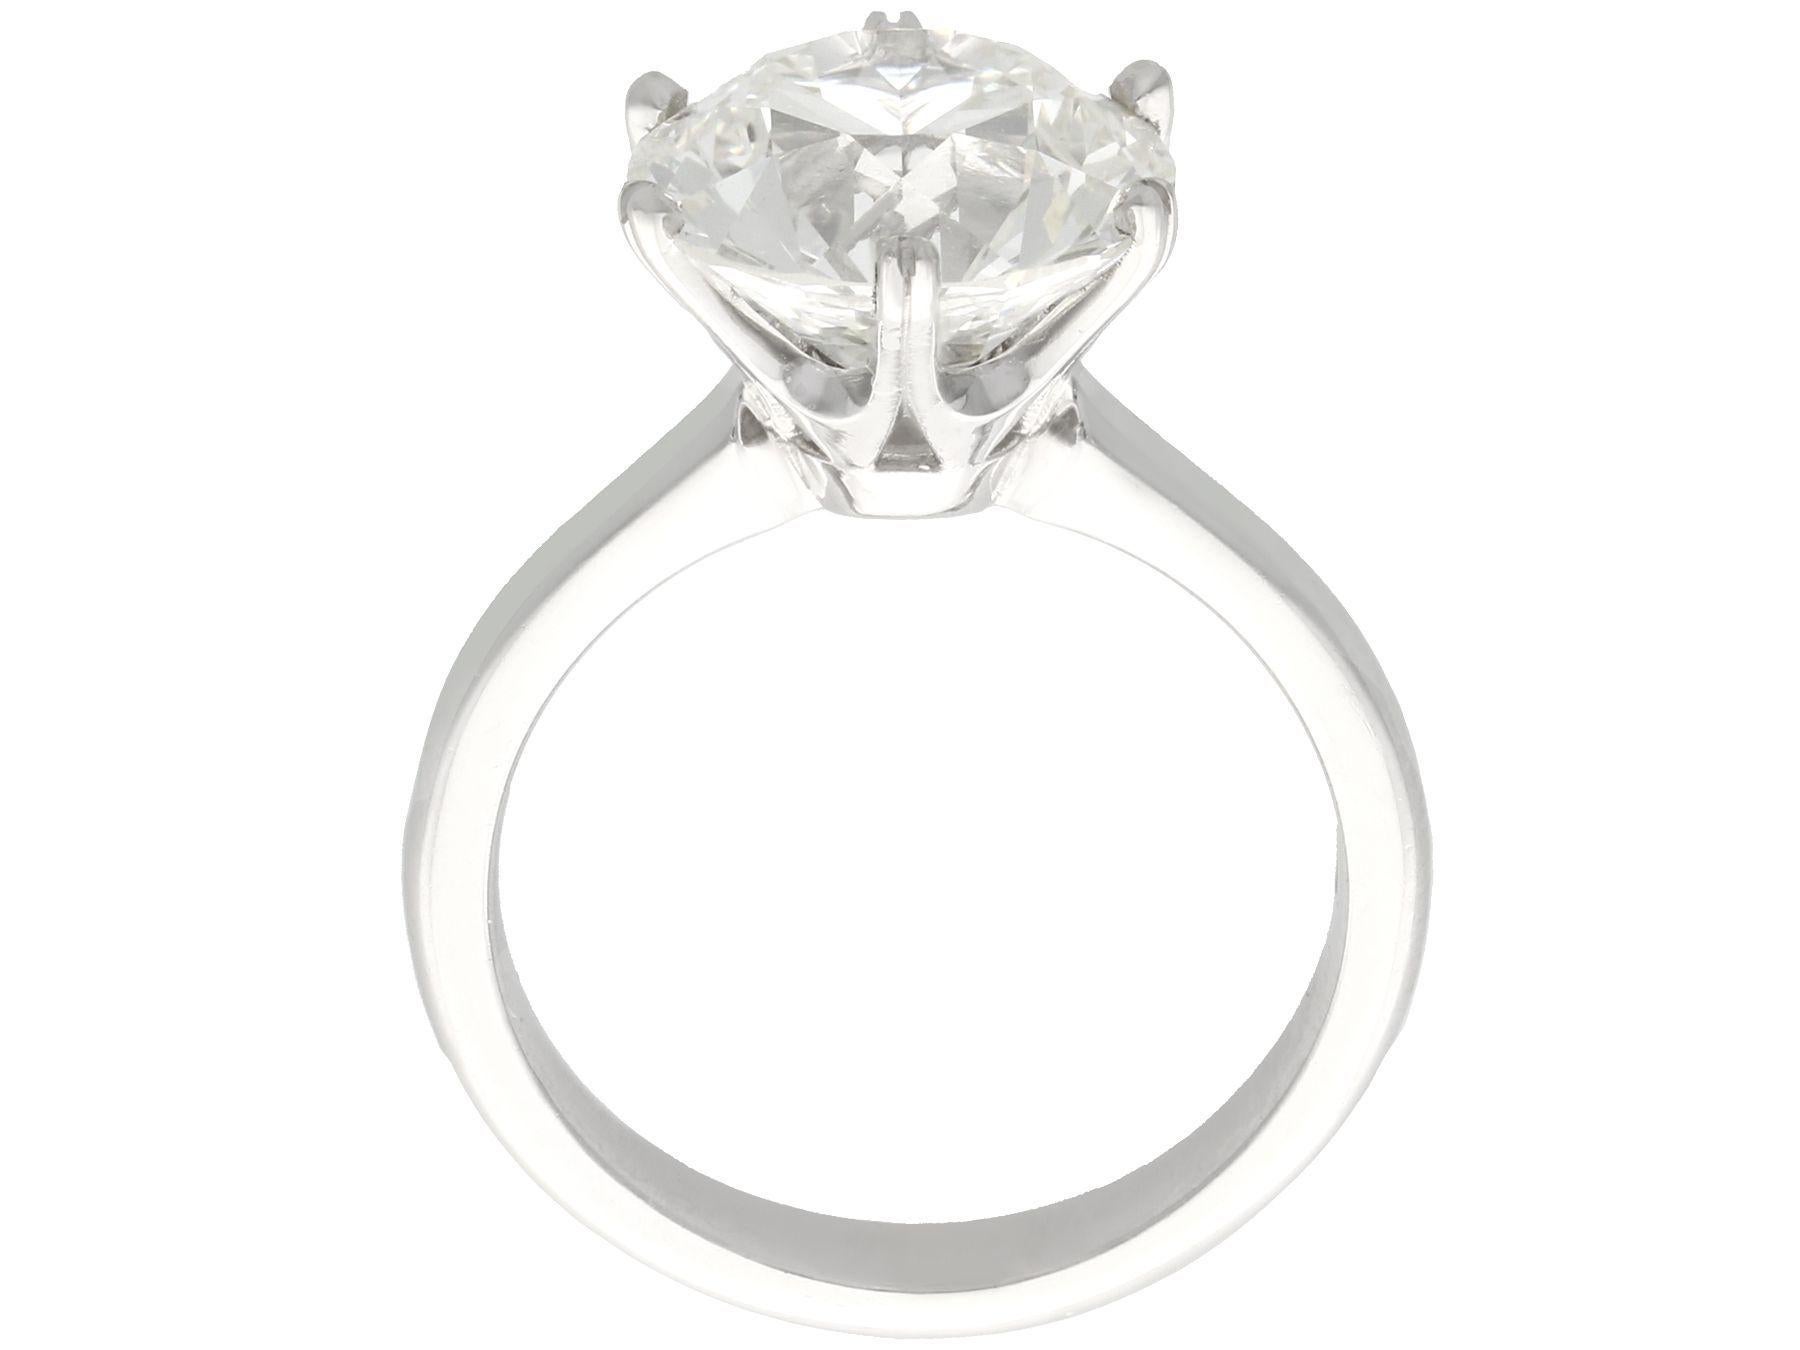 Contemporary 4.89 Carat Diamond Solitaire Engagement Ring in Platinum